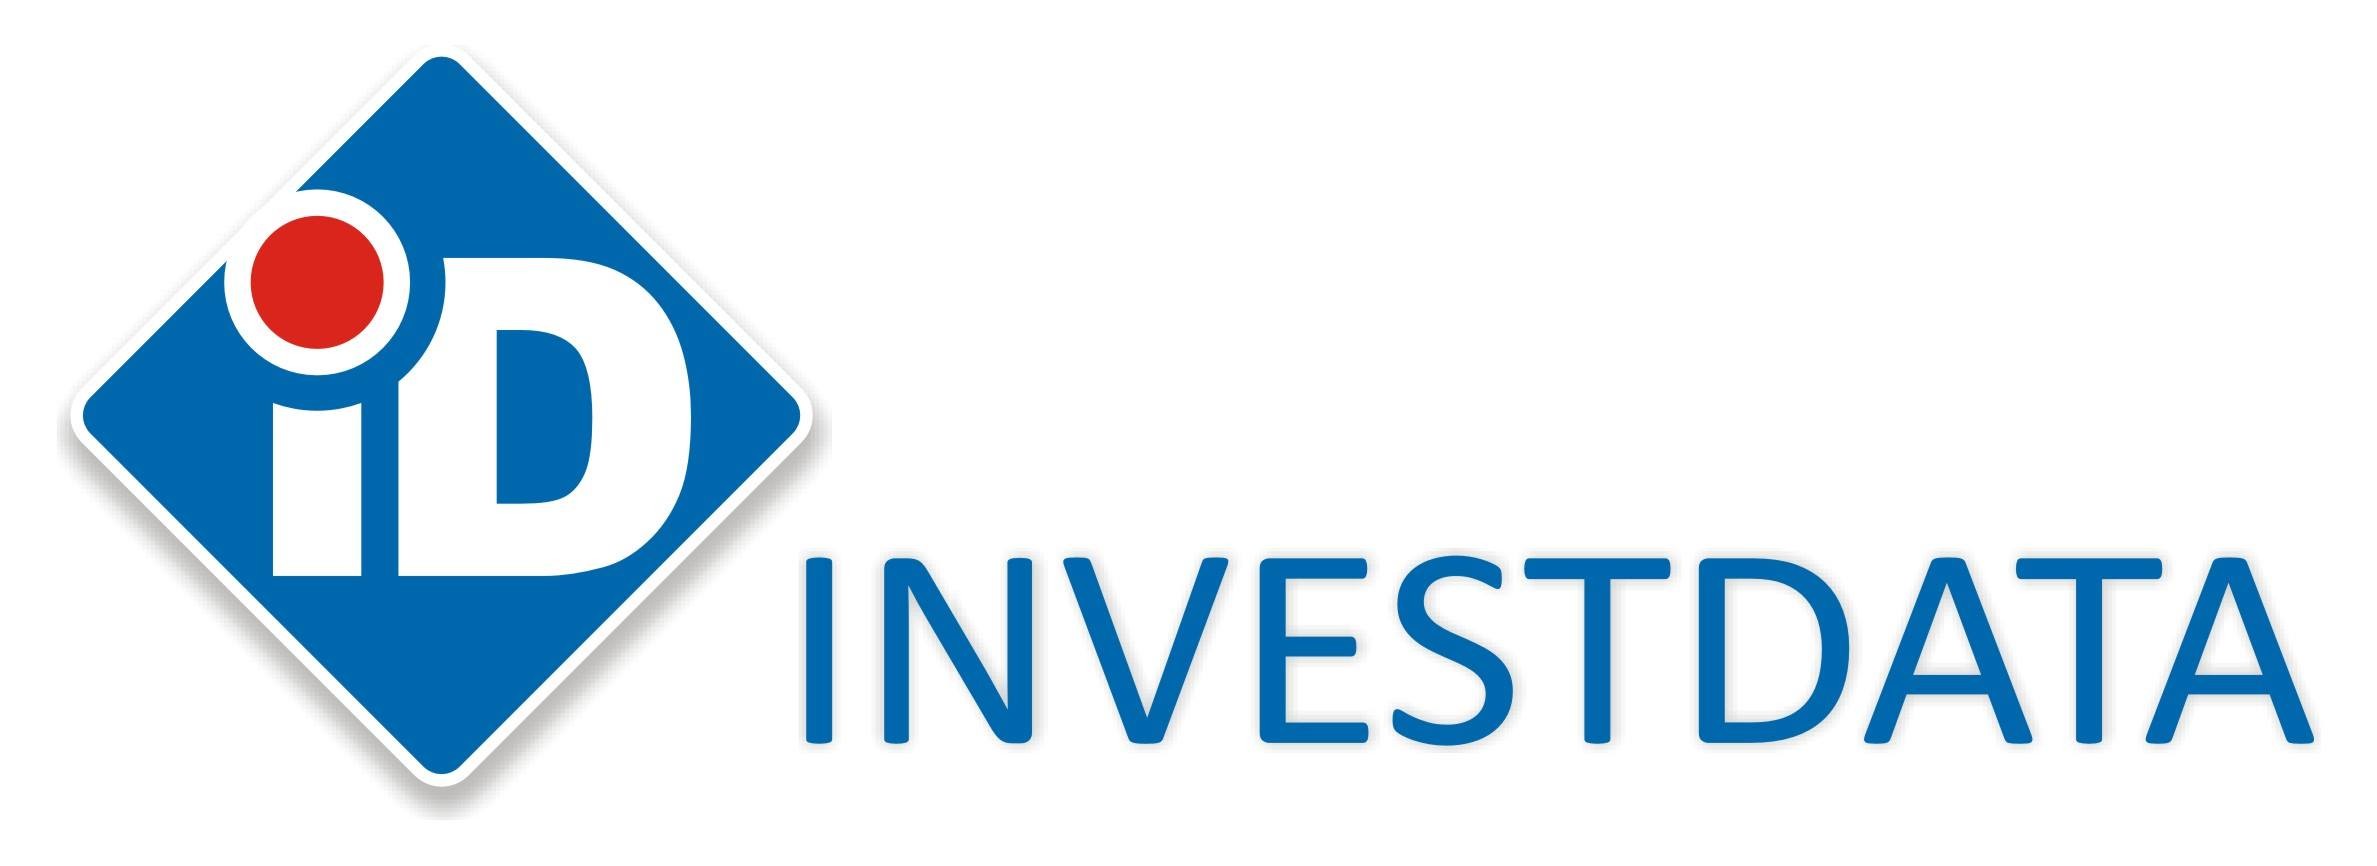 Investdata Limited | LinkedIn